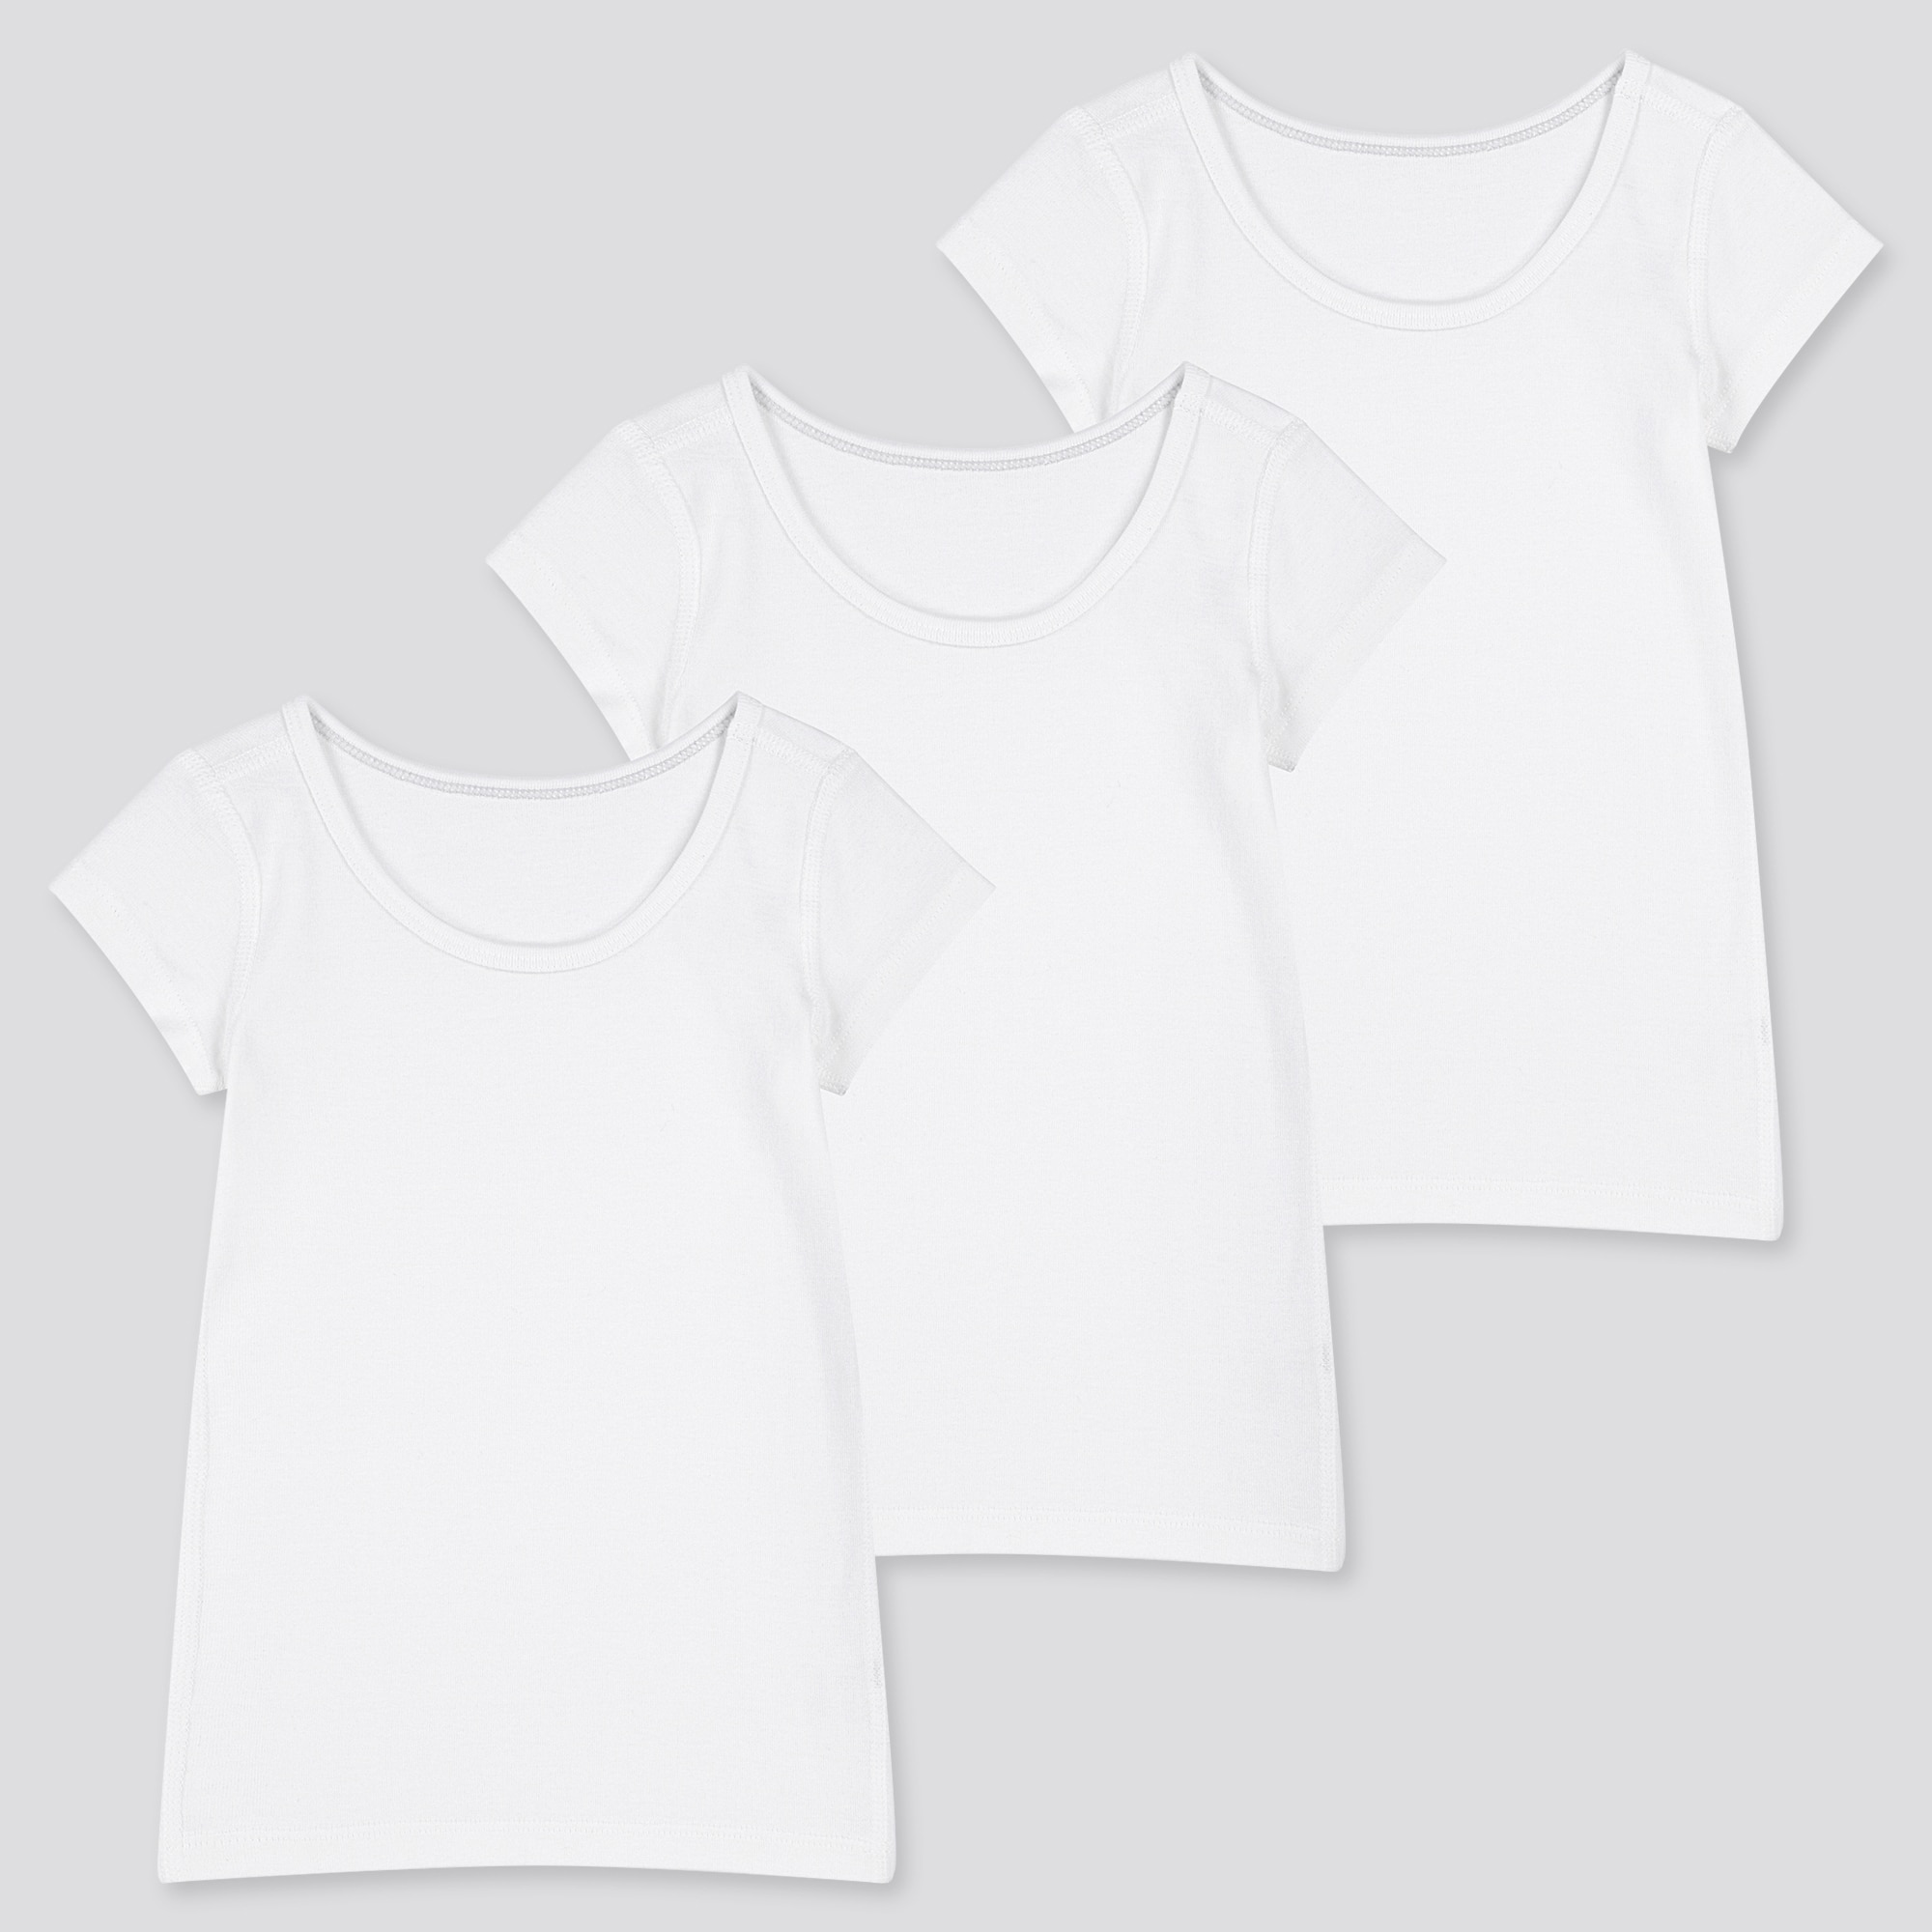 toddler white t shirt